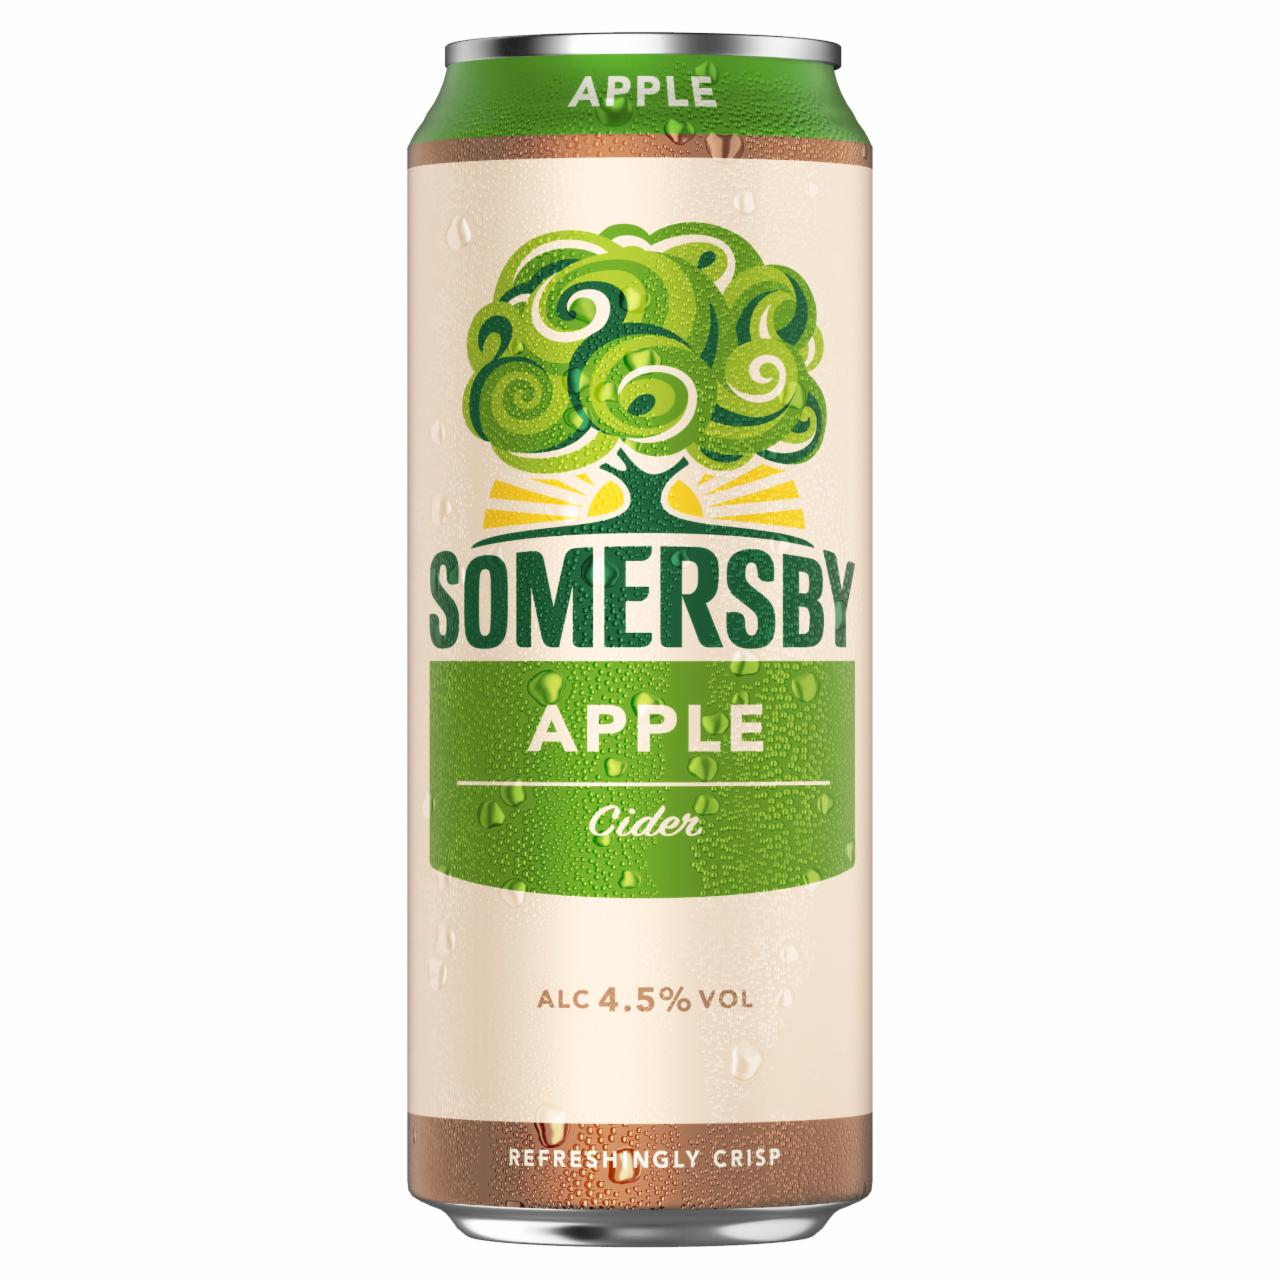 Képek - Somersby cider almalé alapú szénsavas, alkoholos ital 4,5% 0,5 l